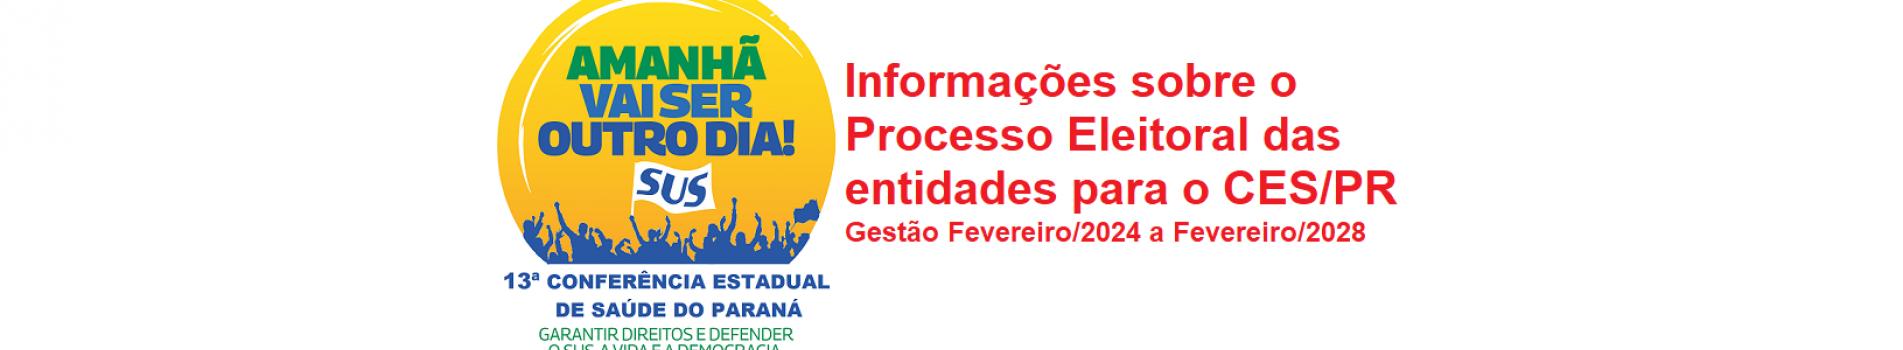 Informações Processo Eleitoral CES/PR 2024/2028